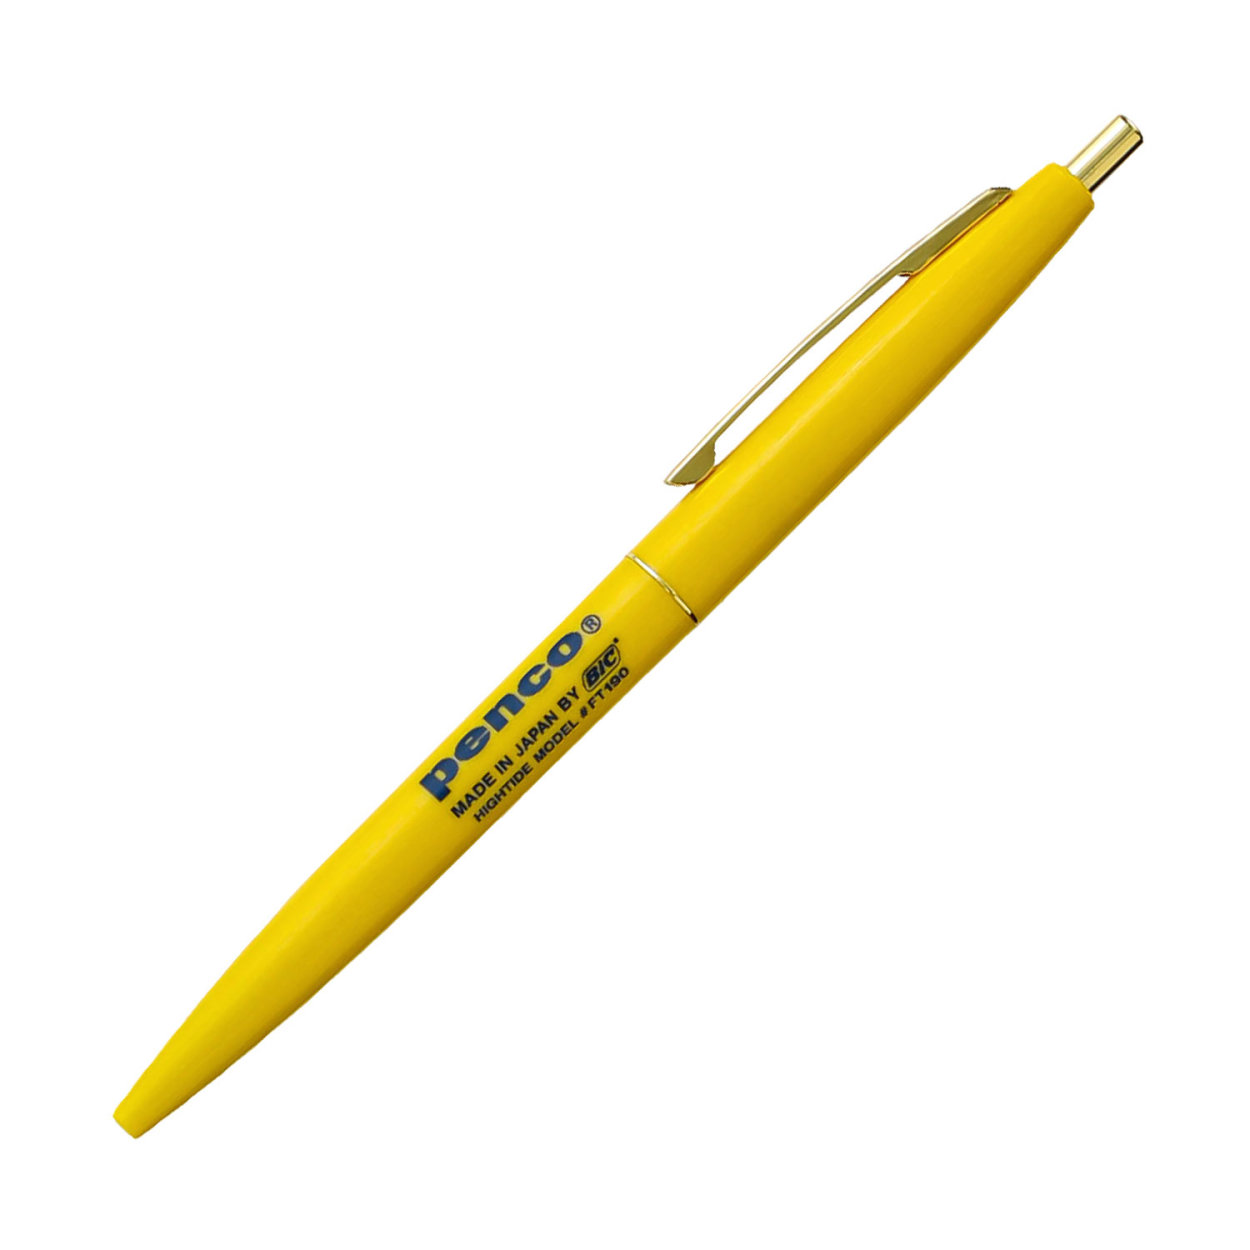 ボールペン penco ペンコ ノックボールペン 0.5mm 黒 ノック 